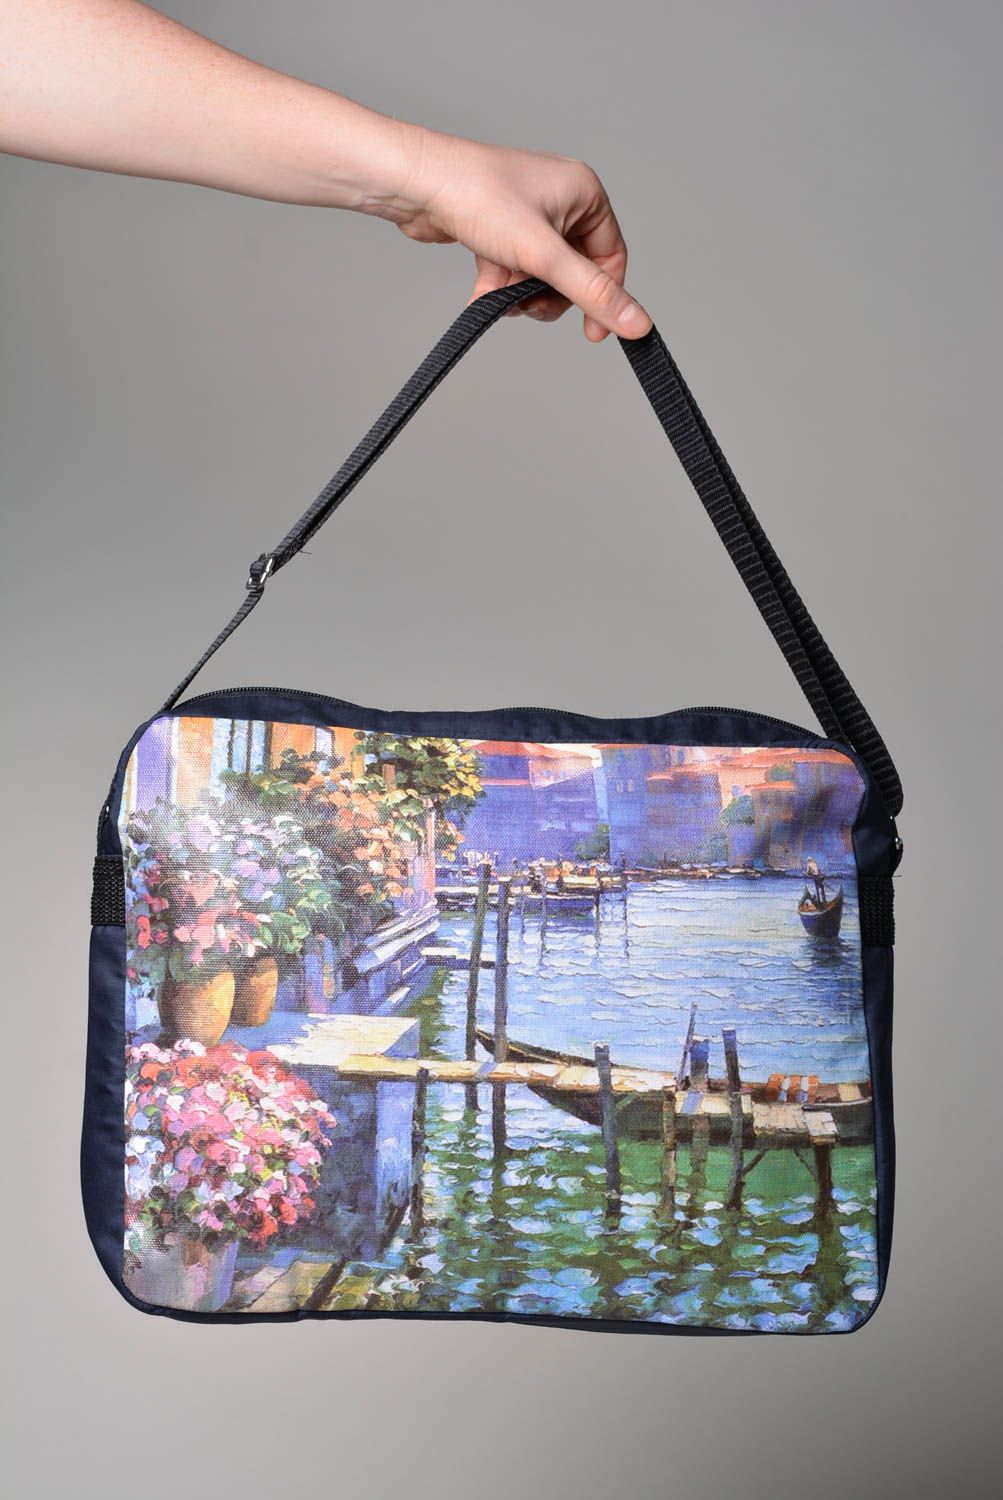 Сумка ручной работы женская сумка с принтом тканевая сумка красивая стильная фото 3